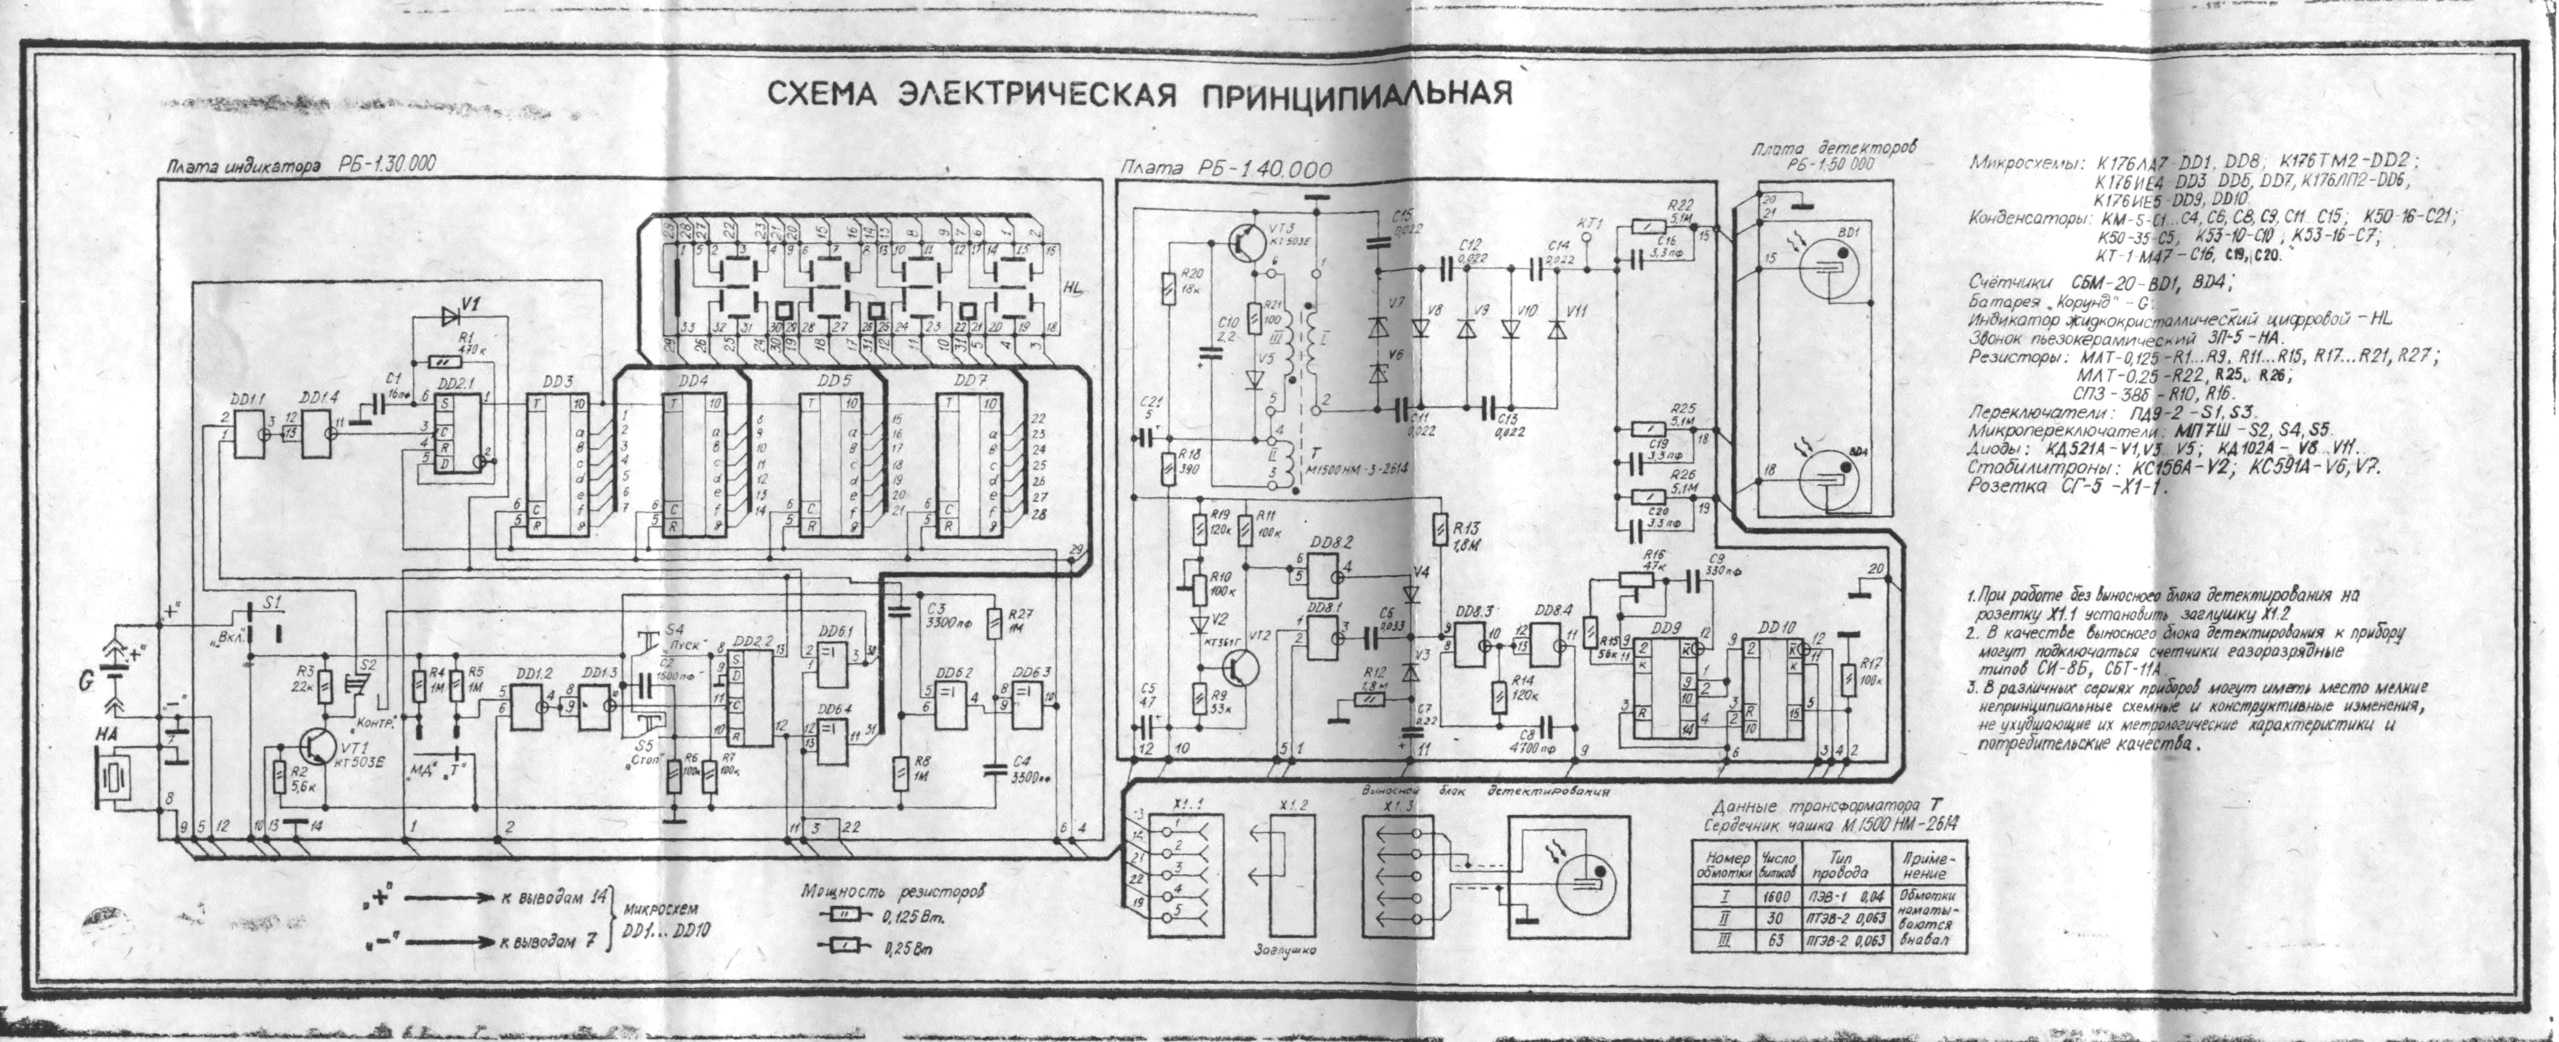 Dosimètres et Compteurs Geiger Müller soviétiques : reviews, tests et réparations Anri0111